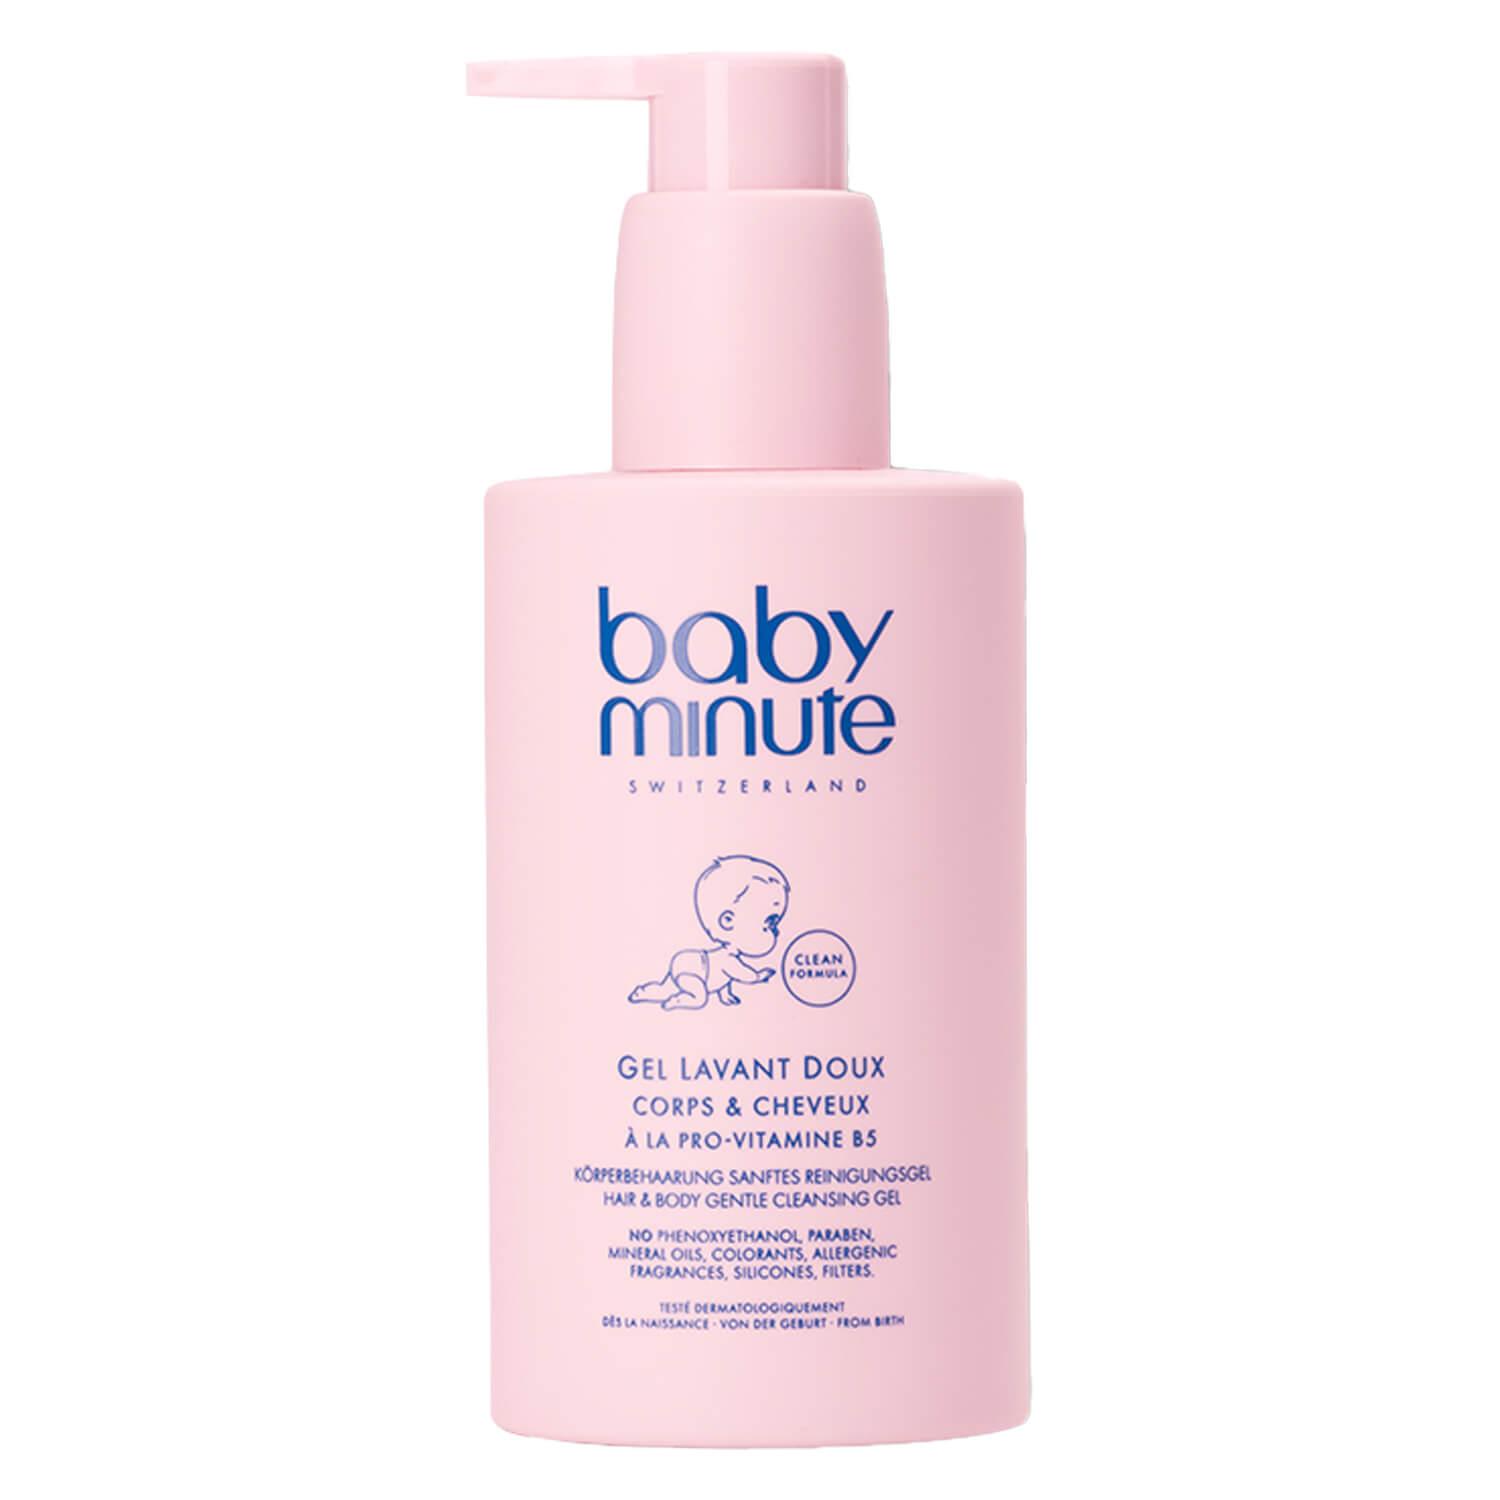 babyminute - Gentle Cleansing Gel Hair & Body